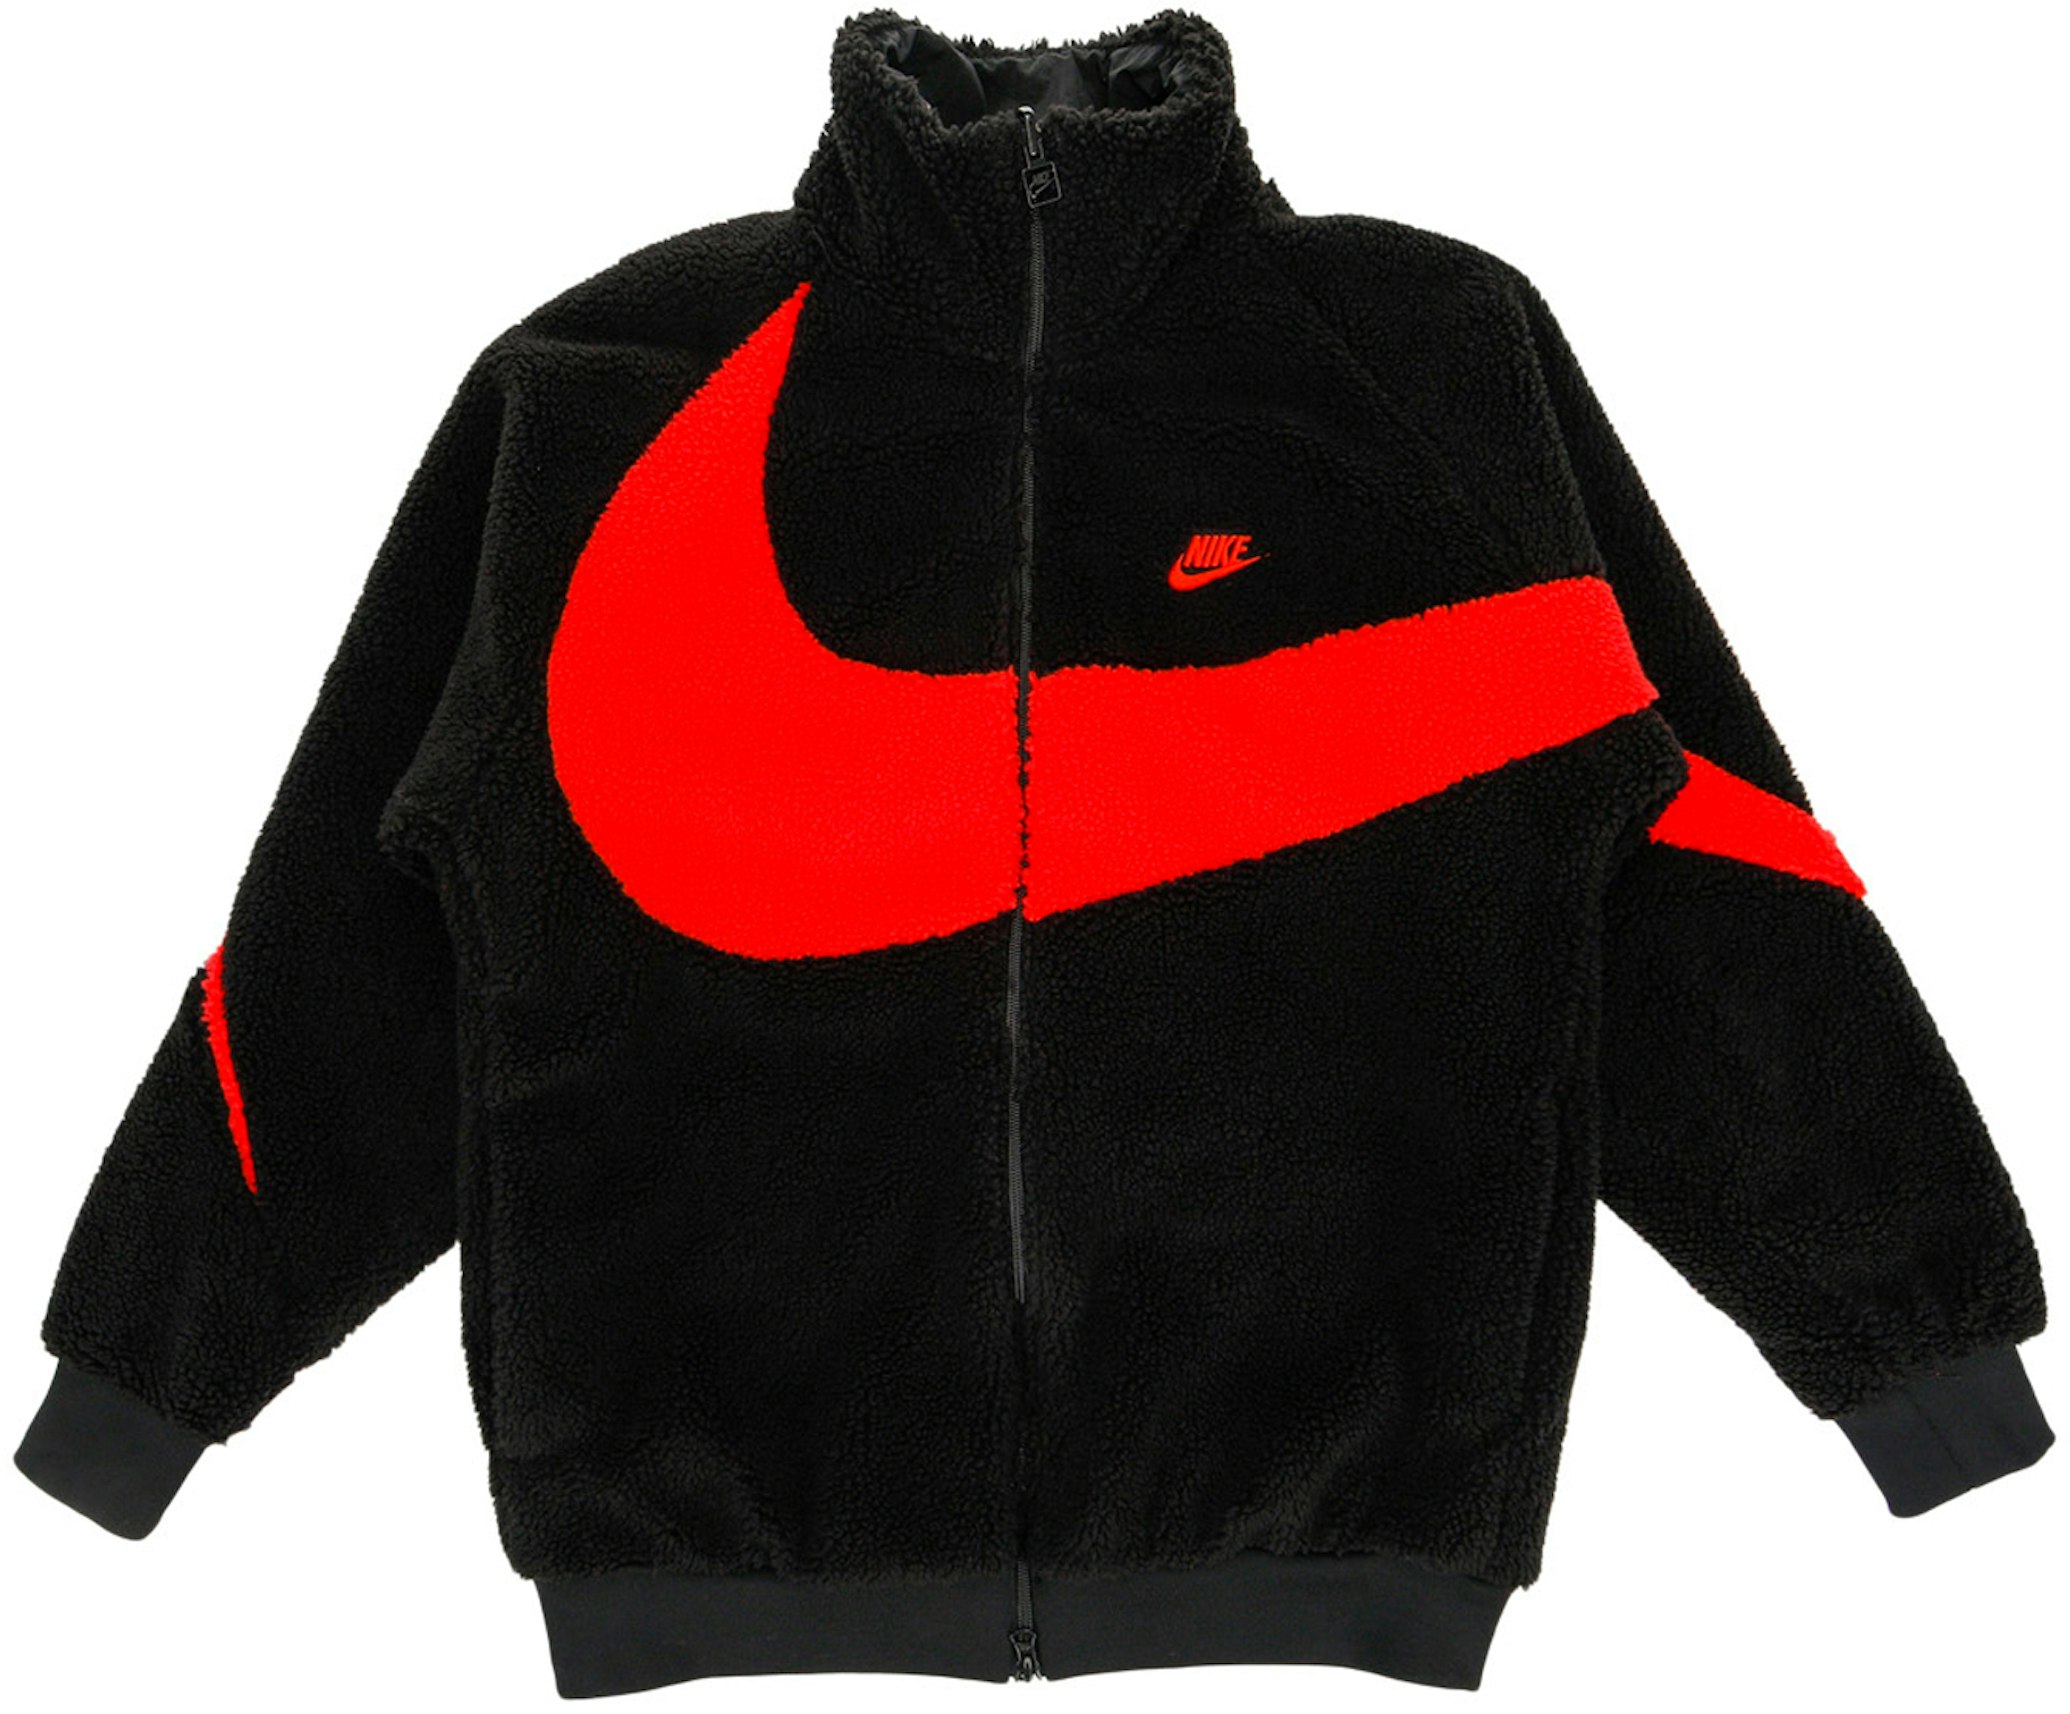 Nike Swoosh Reversible Boa Jacket (Asia Sizing) Black Red - FW21 Men's - US